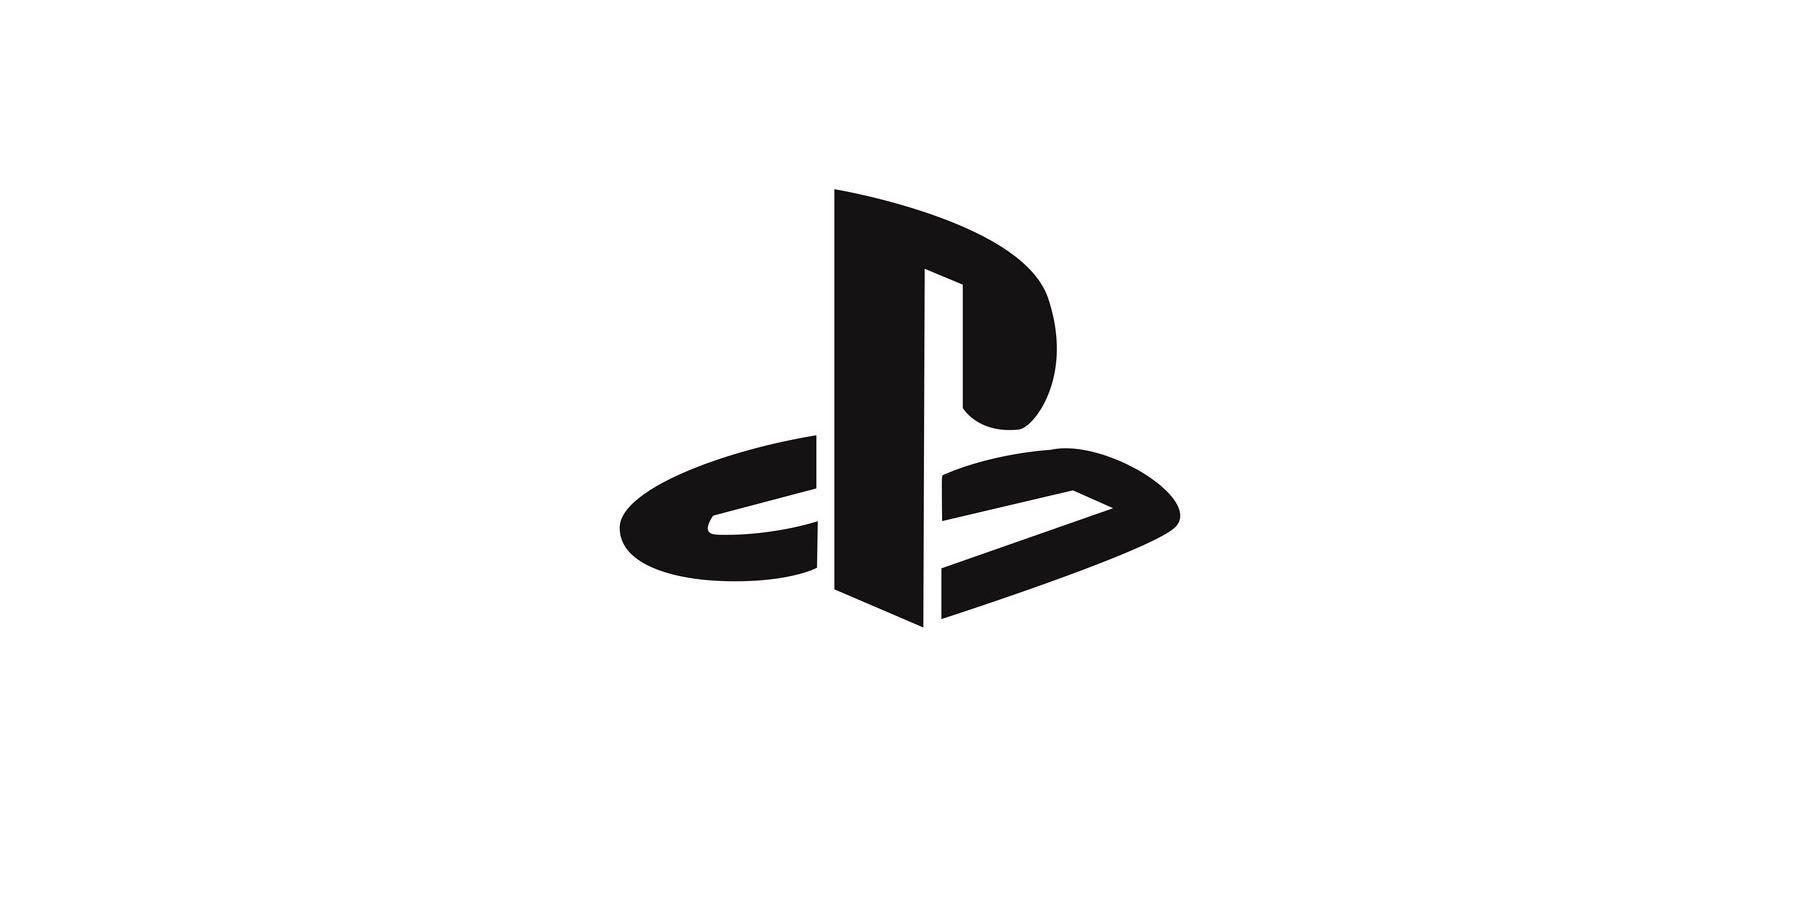 Un logo PlayStation noir sur fond blanc.